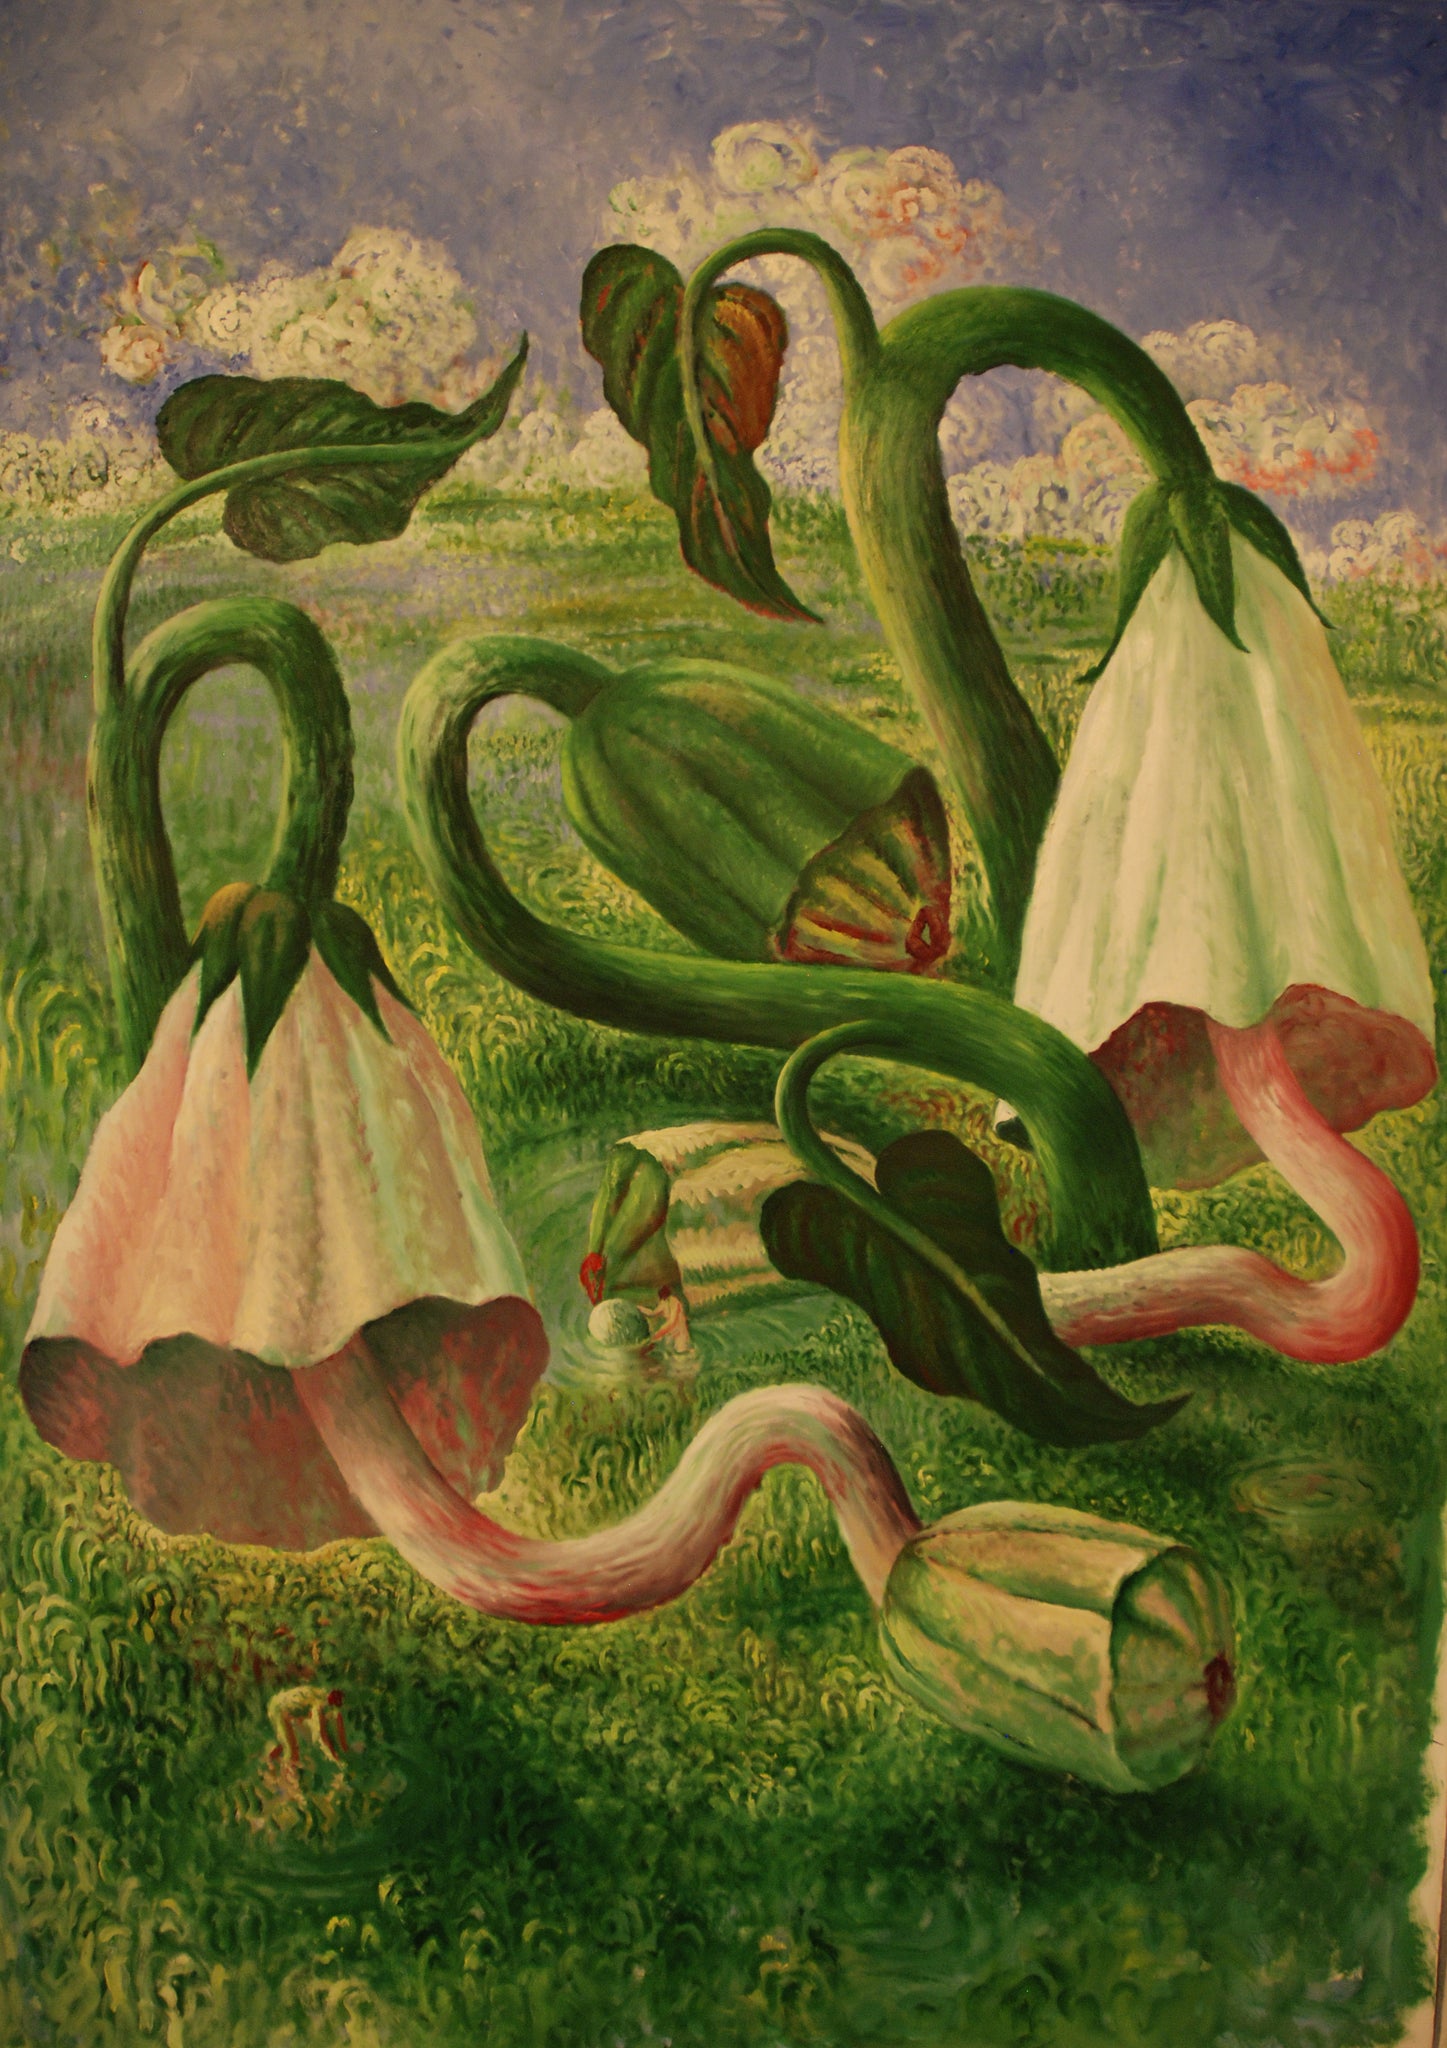 Carlos Aquilino, 'Buscadores de semillas I (Looking seeds I)', 2009